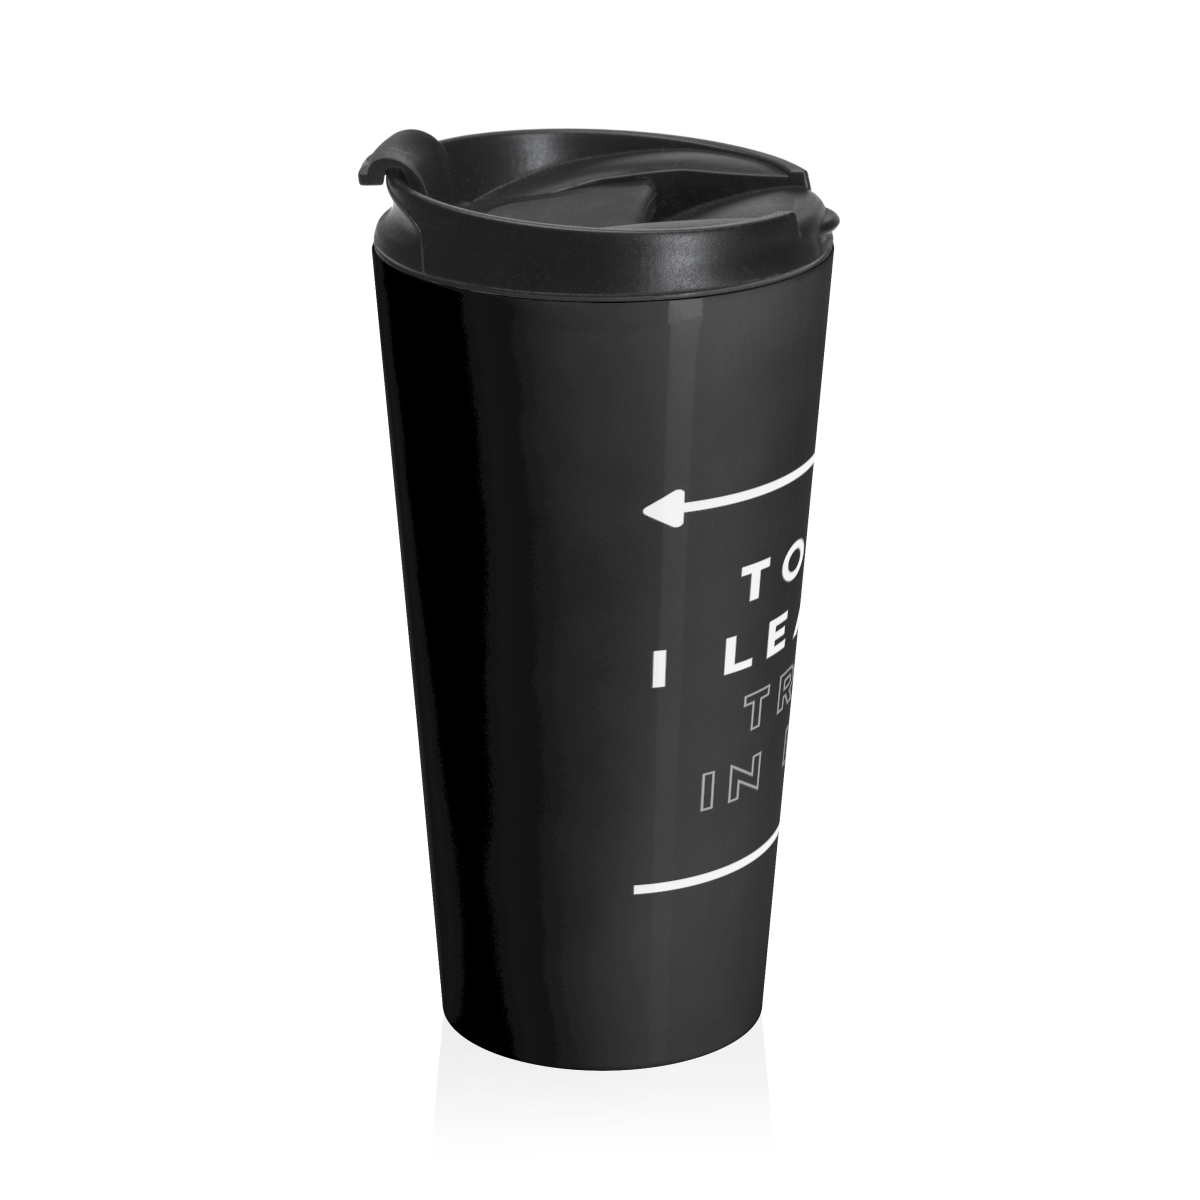 TIL - Stainless Steel Travel Mug product thumbnail image